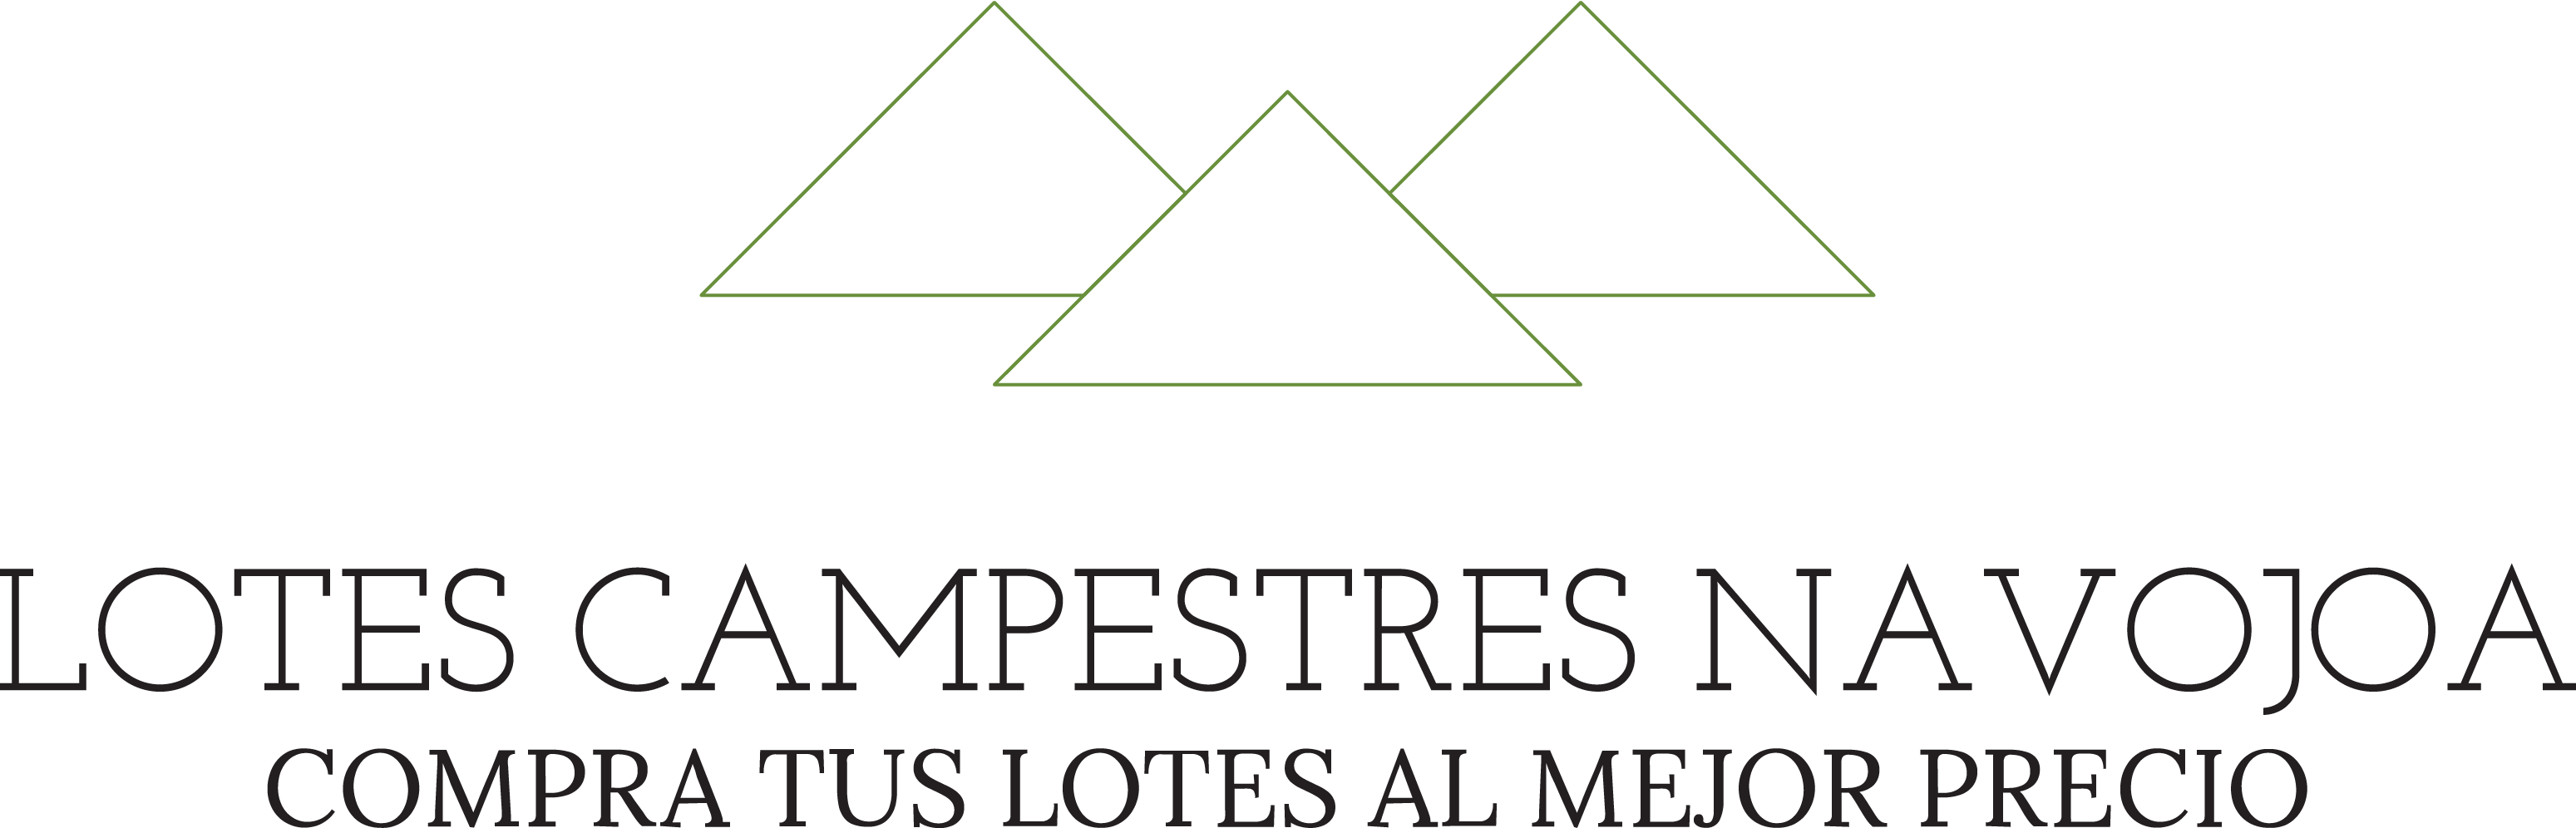 Logotipo de lotes campestres navojoa, empresa que vende terrenos por lotes a precios accesibles